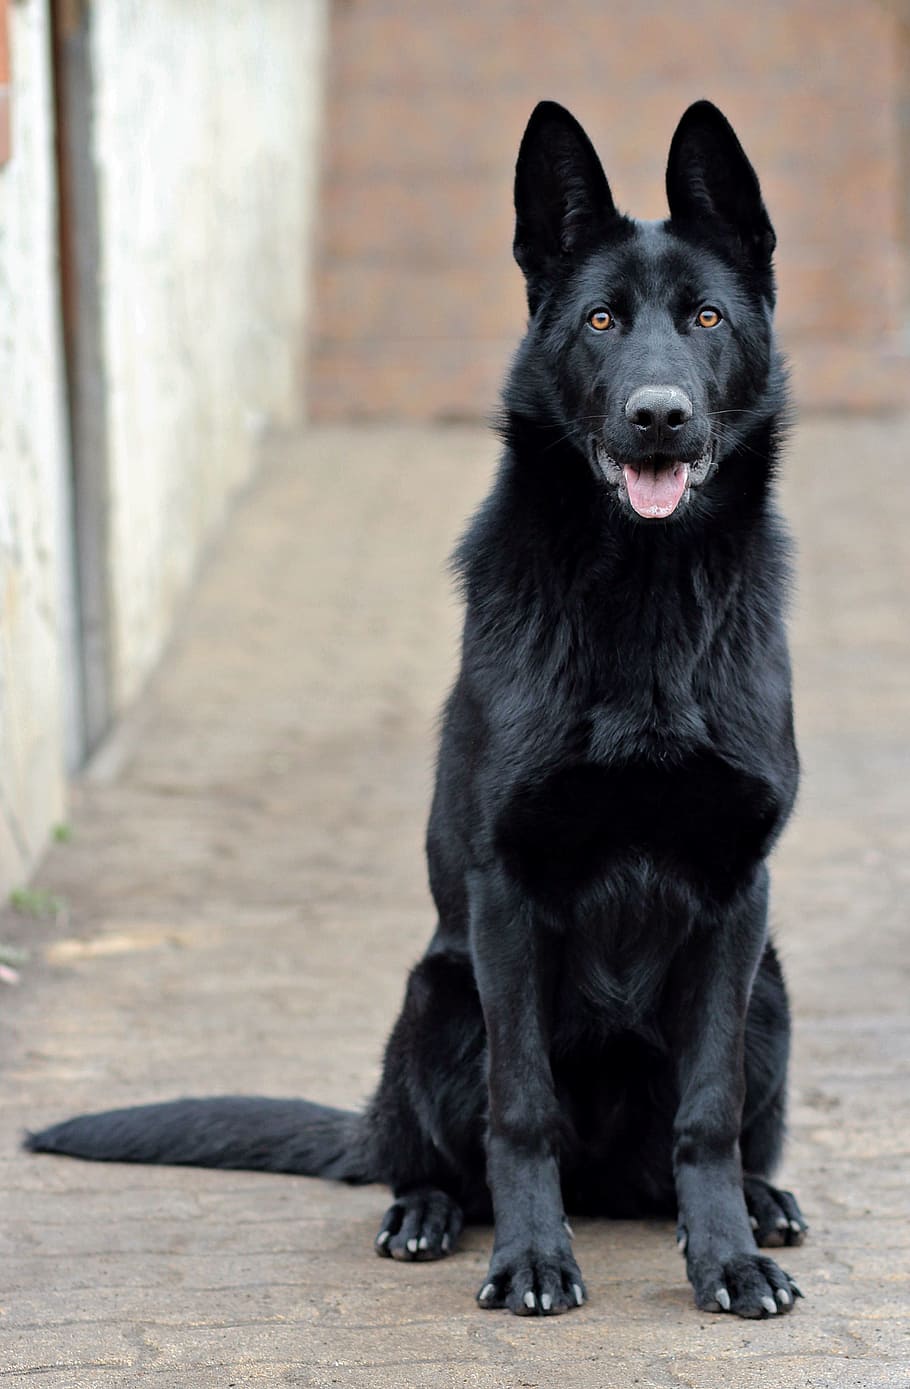 固体, 黒, ジャーマン・シェパード犬, 座って, 舗装, 黒のジャーマン・シェパード, 犬, 肖像画, 美しさ, 一匹の動物